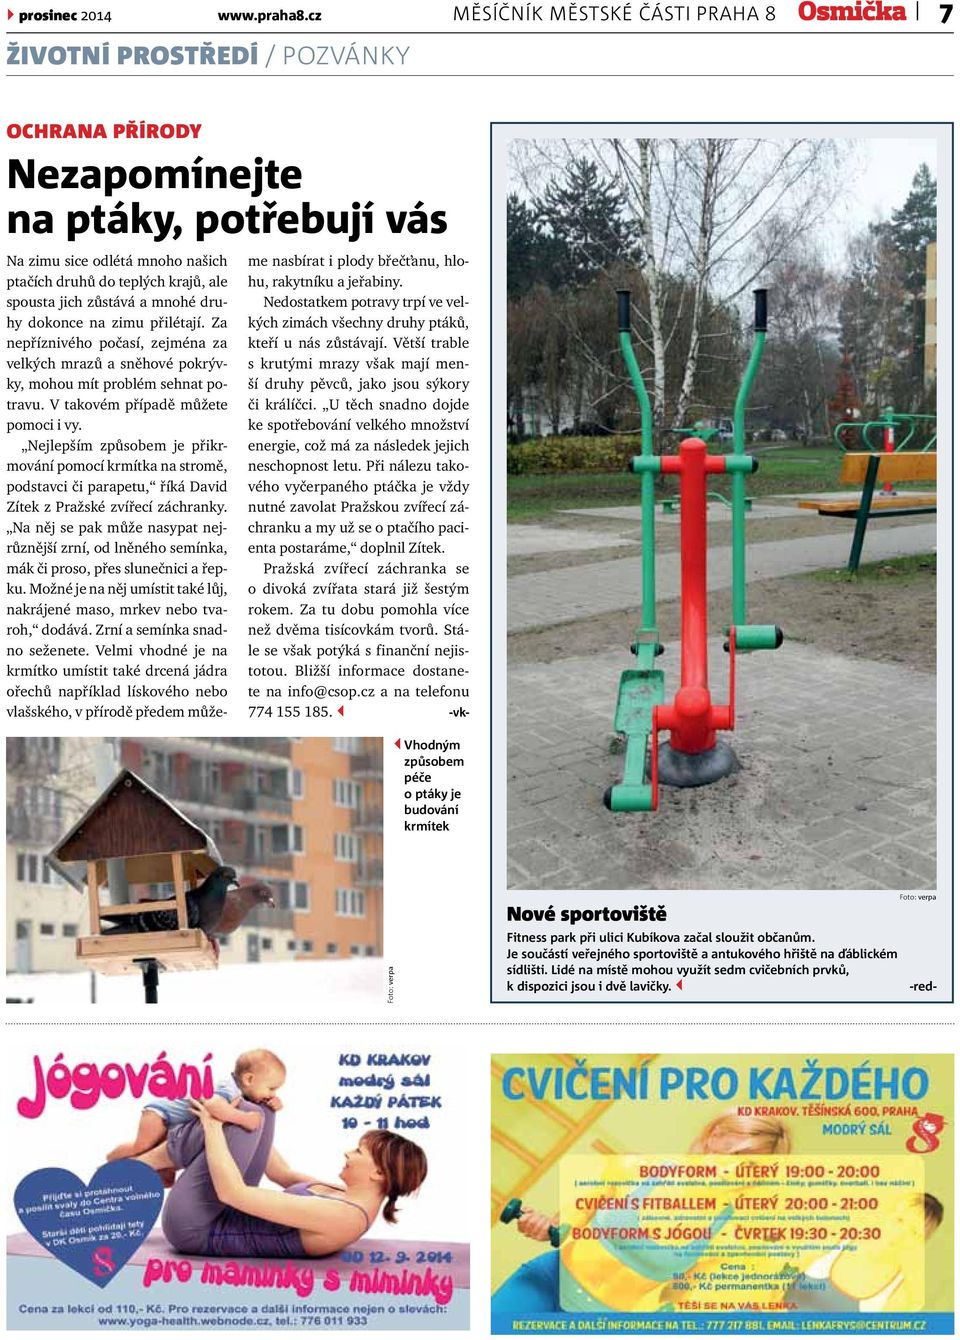 Fitness park při ulici Kubíkova začal sloužit občanům. Je součástí veřejného sportoviště a antukového hřiště na ďáblickém sídlišti.